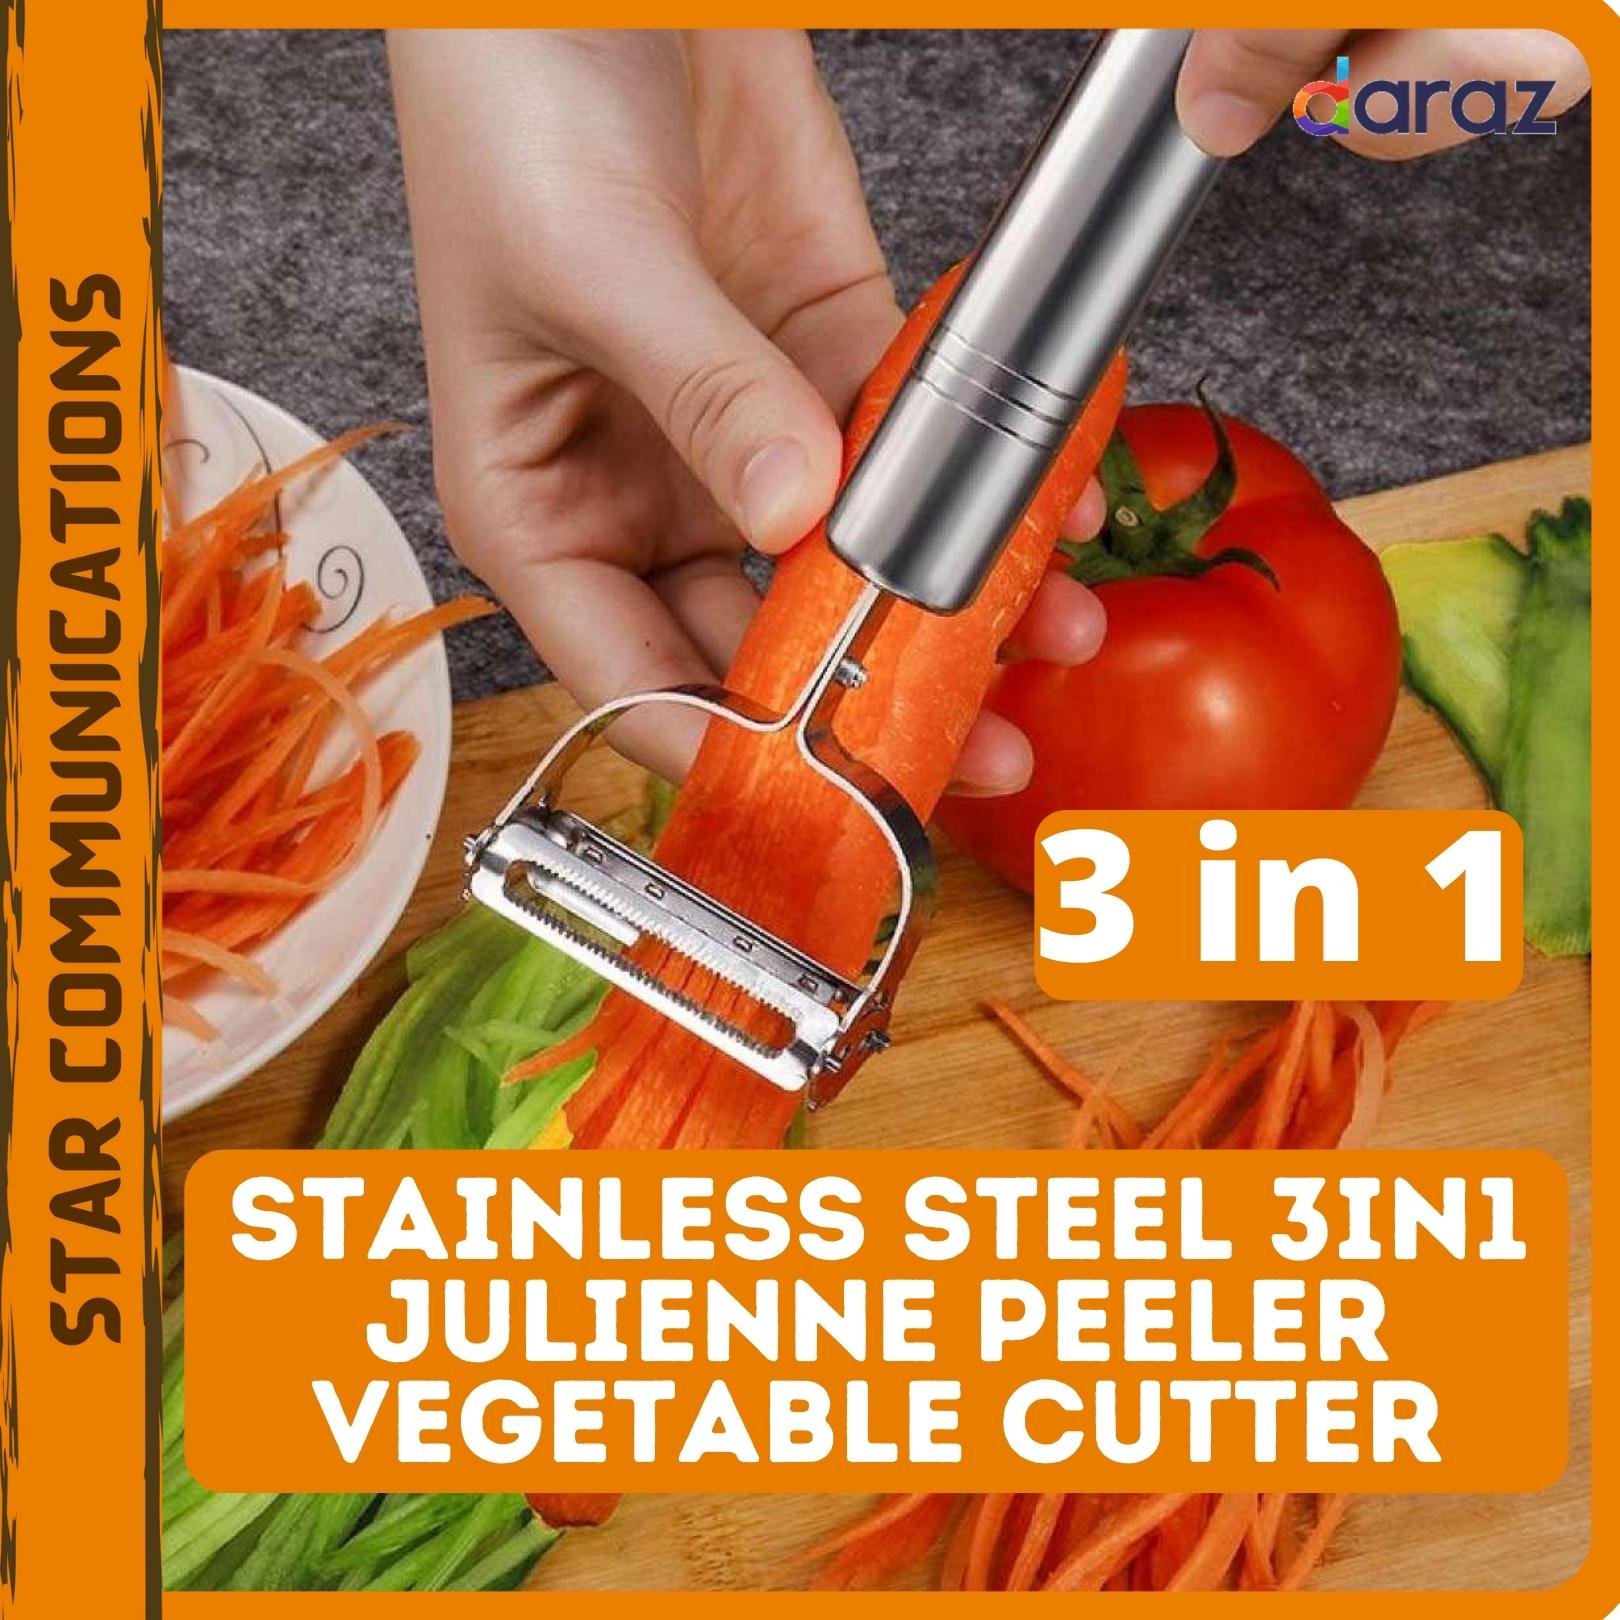 SKYCARPER 3-in-1 Vegetable Peeler & Fruit Peeler, Strip Cutter Vegetable Cutter Fruit & Vegetable Stainless Steel Peeler Set with Peeler, Julienne Cutter and